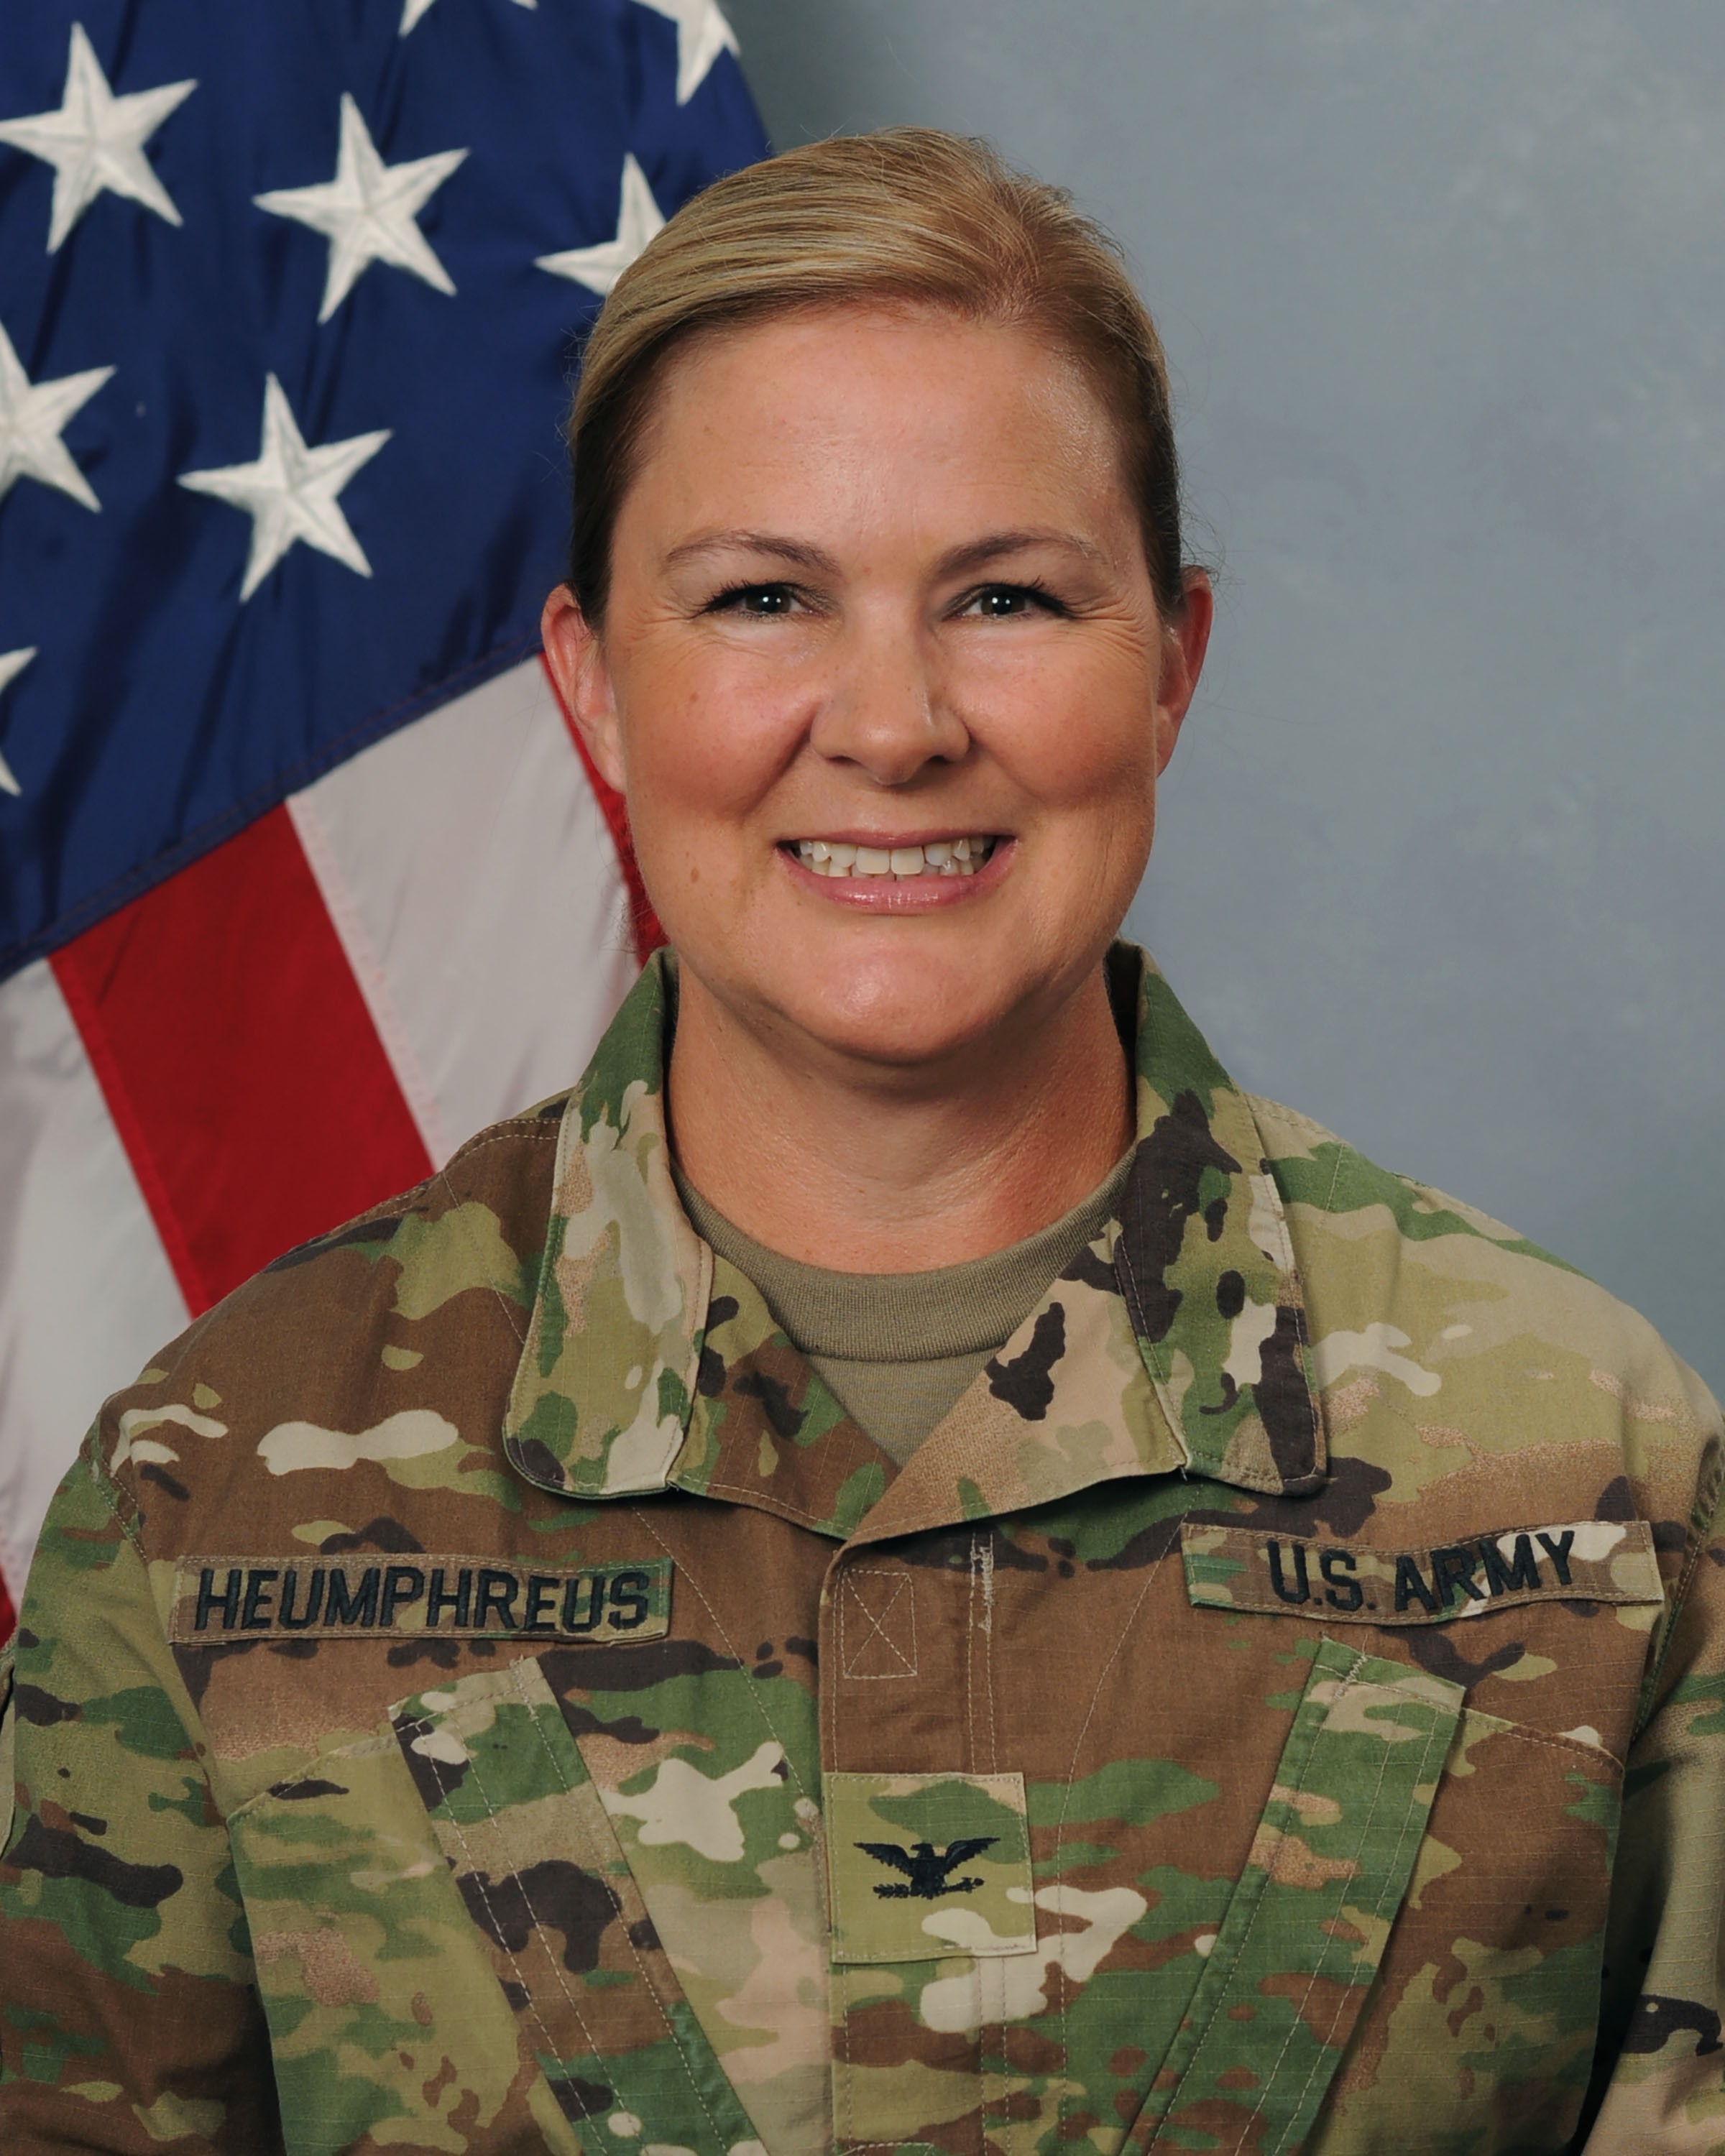 Col. Nicole Heumphreus